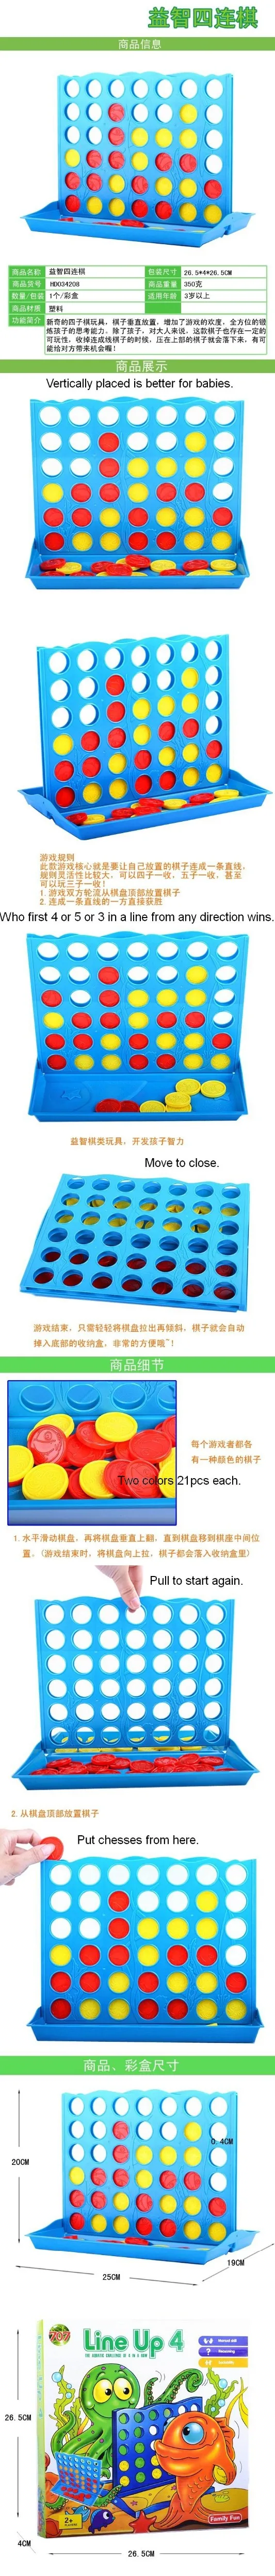 Развивающие игрушки для детей, развивающая игра, 4 шахматы, 4 в ряд, 4 в линию, хорошее качество, небесно-голубой цвет, большой размер